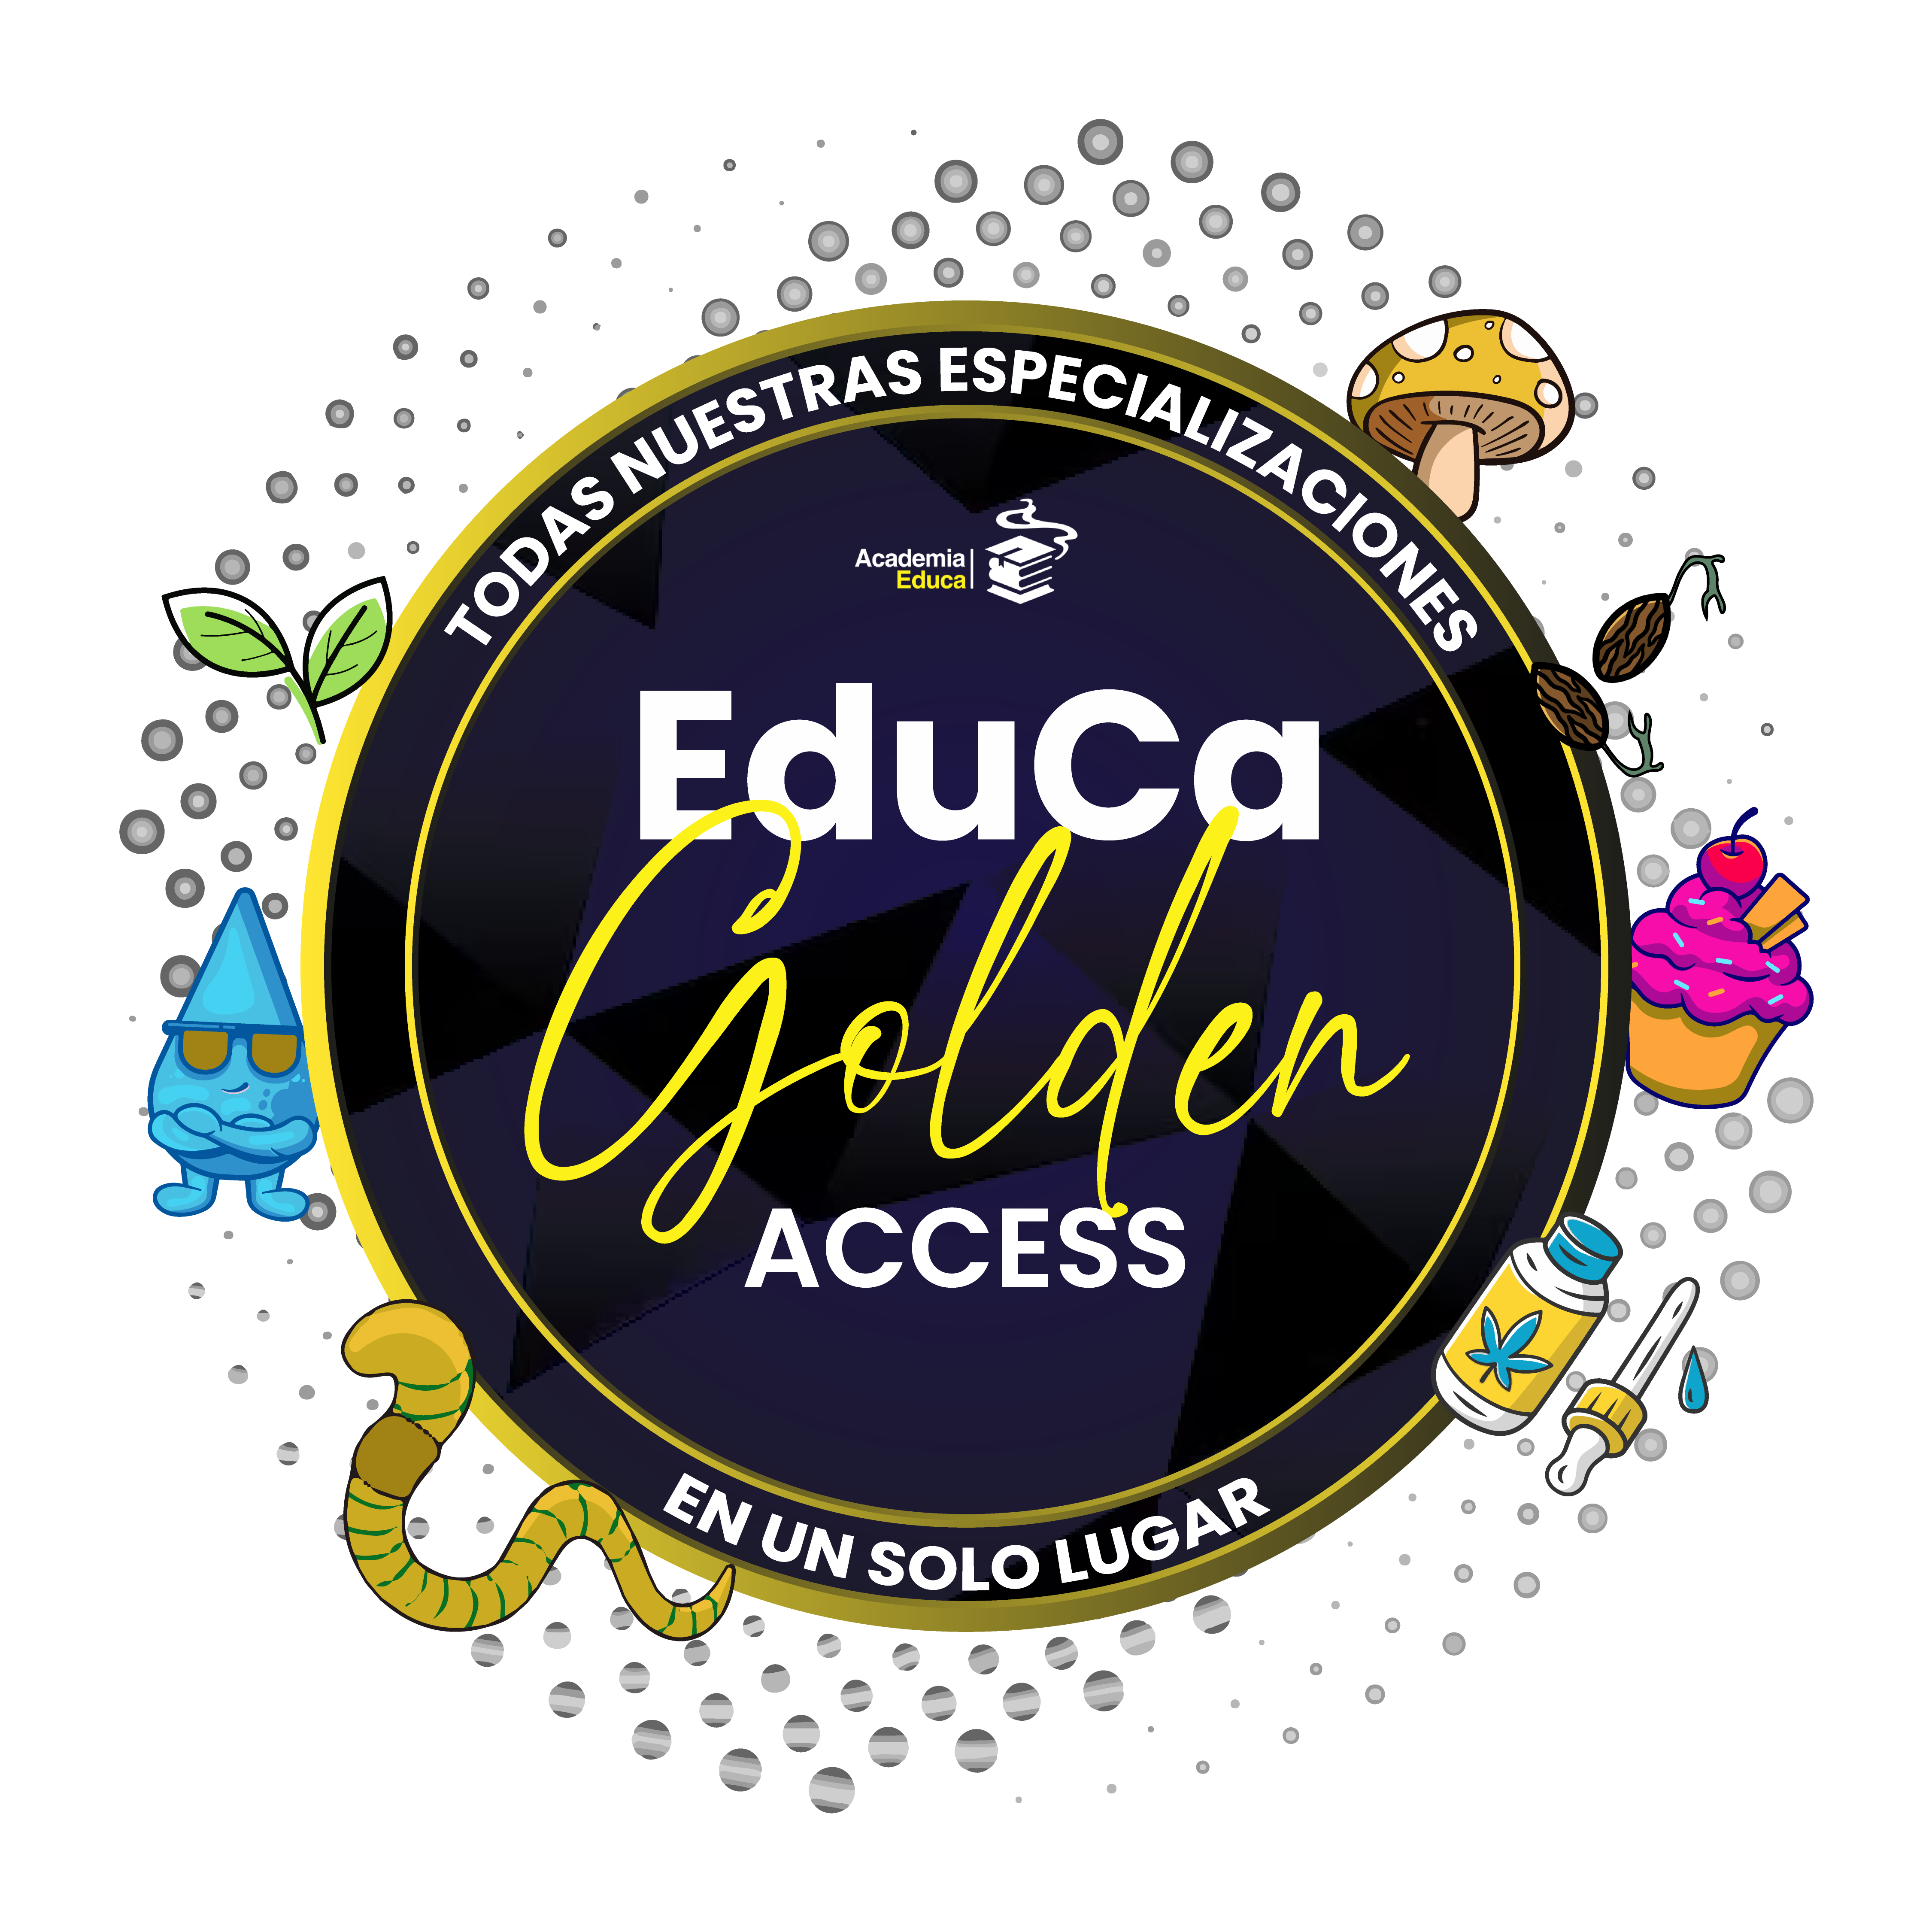 Golden Access PRESENCIAL: TODAS nuestras especializaciones en 1 solo lugar! Accedé a clases PRESENCIALES por 1 año! + M. Gastro VIRTUAL + M. RSO VIRTUAL